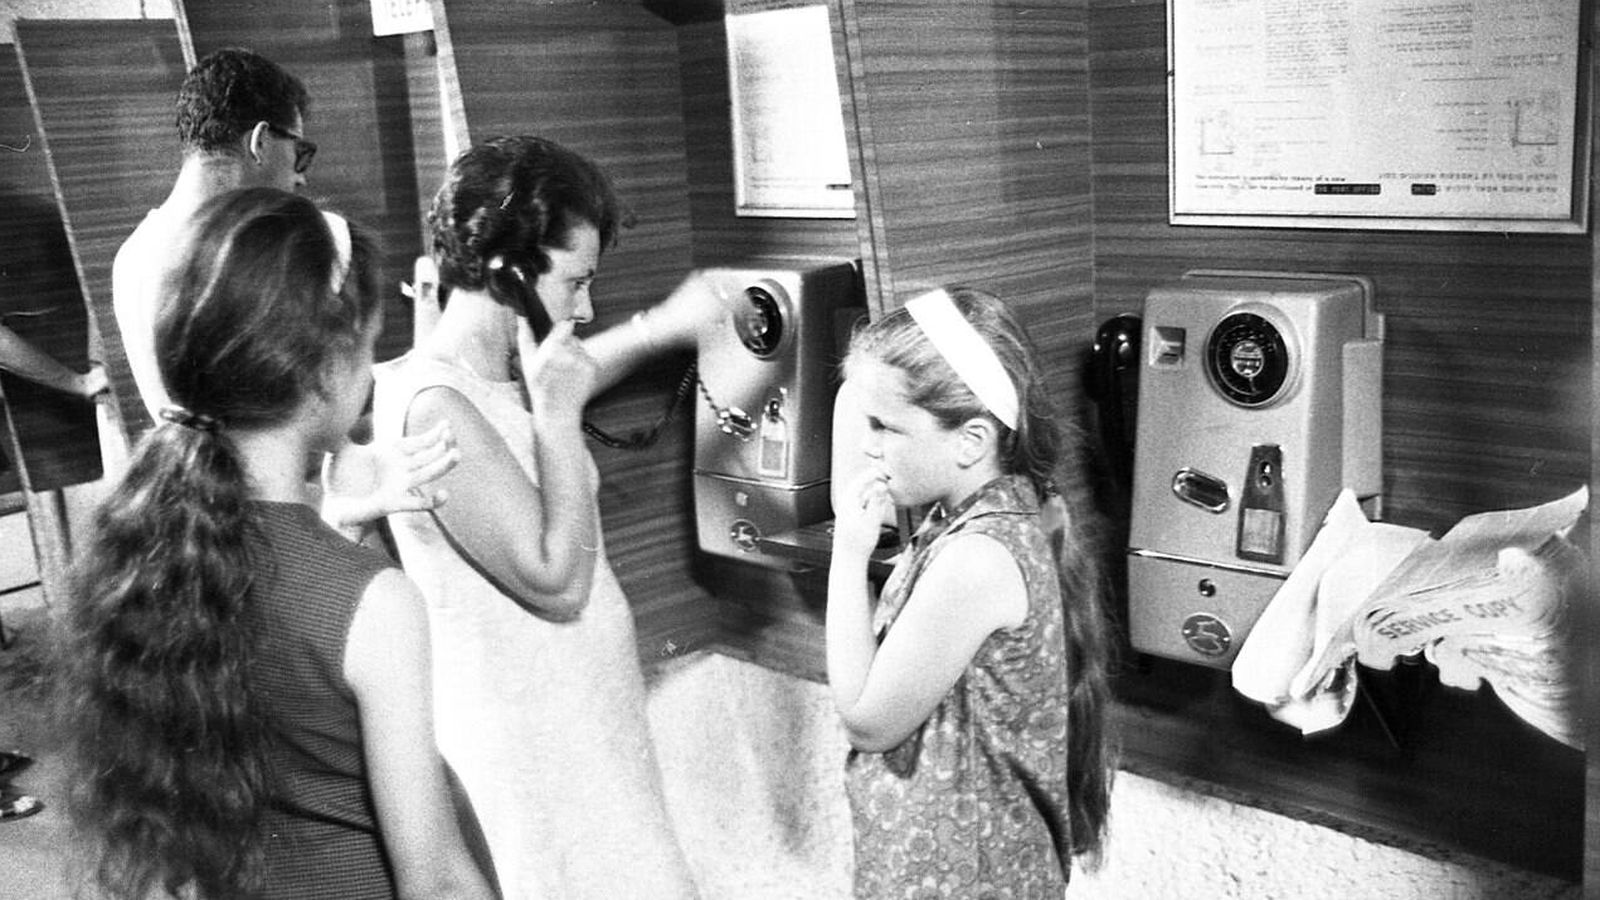 Una mujer haciendo una llamada en Israel en los 60. (Dan Hadani collection)